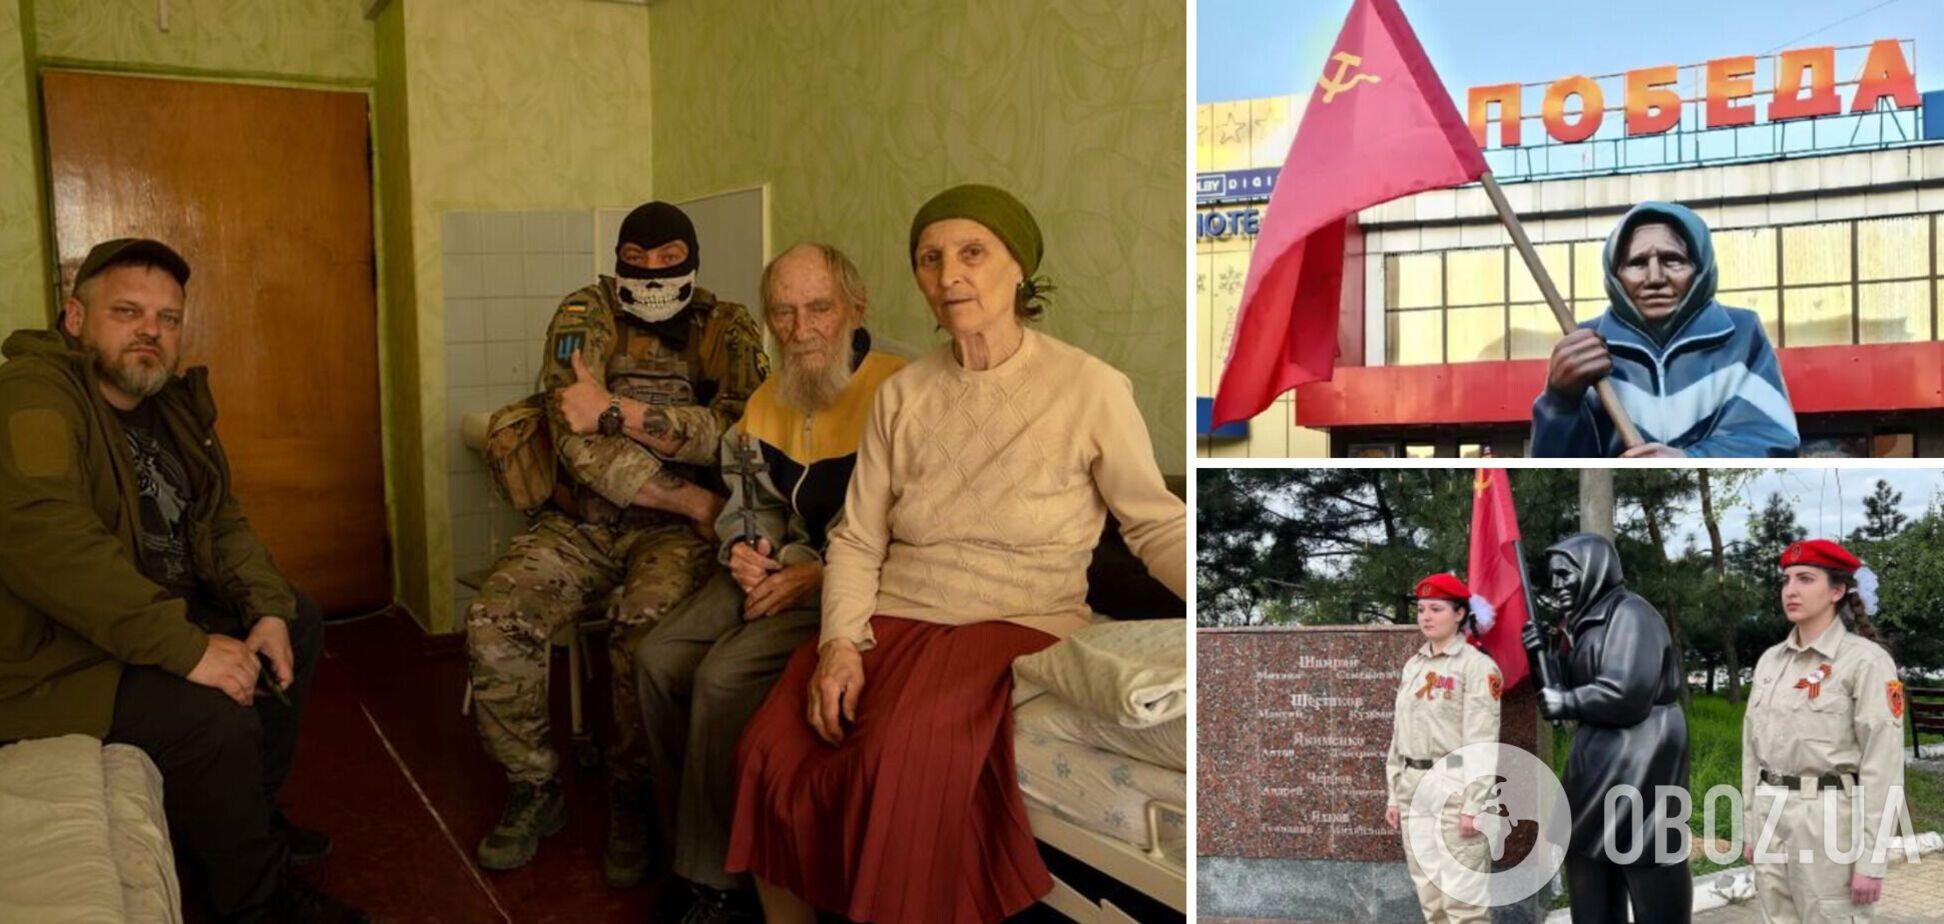 Забросила красный флаг: бабушка, ставшая 'звездой' в РФ, прозрела после прилета вражеского снаряда. Видео